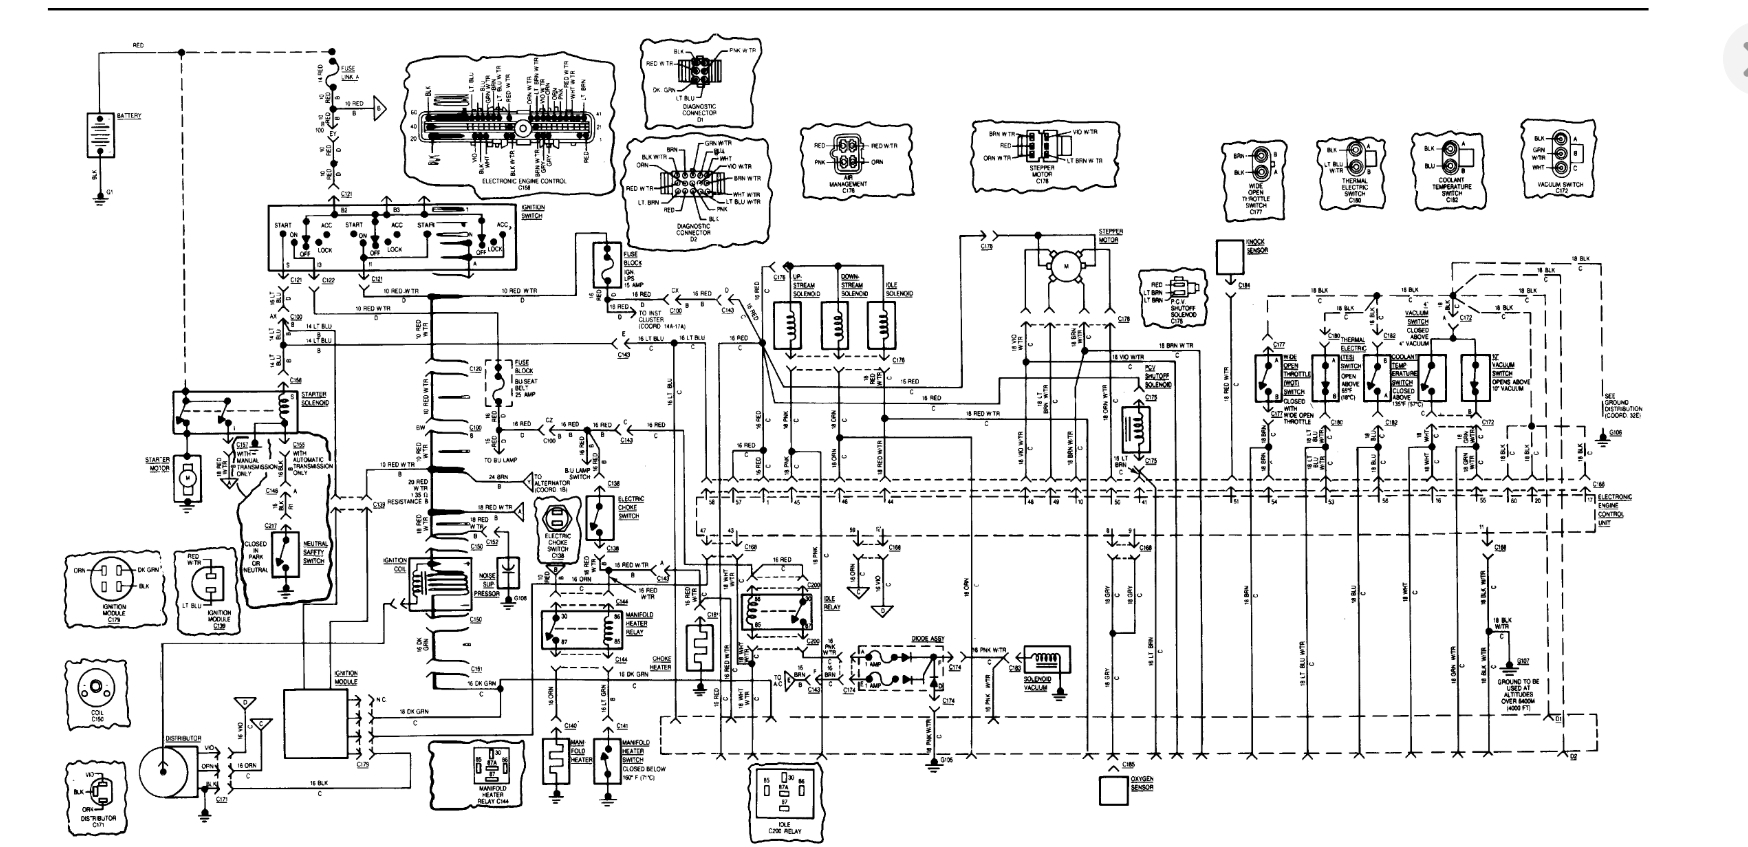 Jeep Cj7 Turn Signal Wiring Diagram : 1980 Jeep Cj7 Turn Signal Wiring